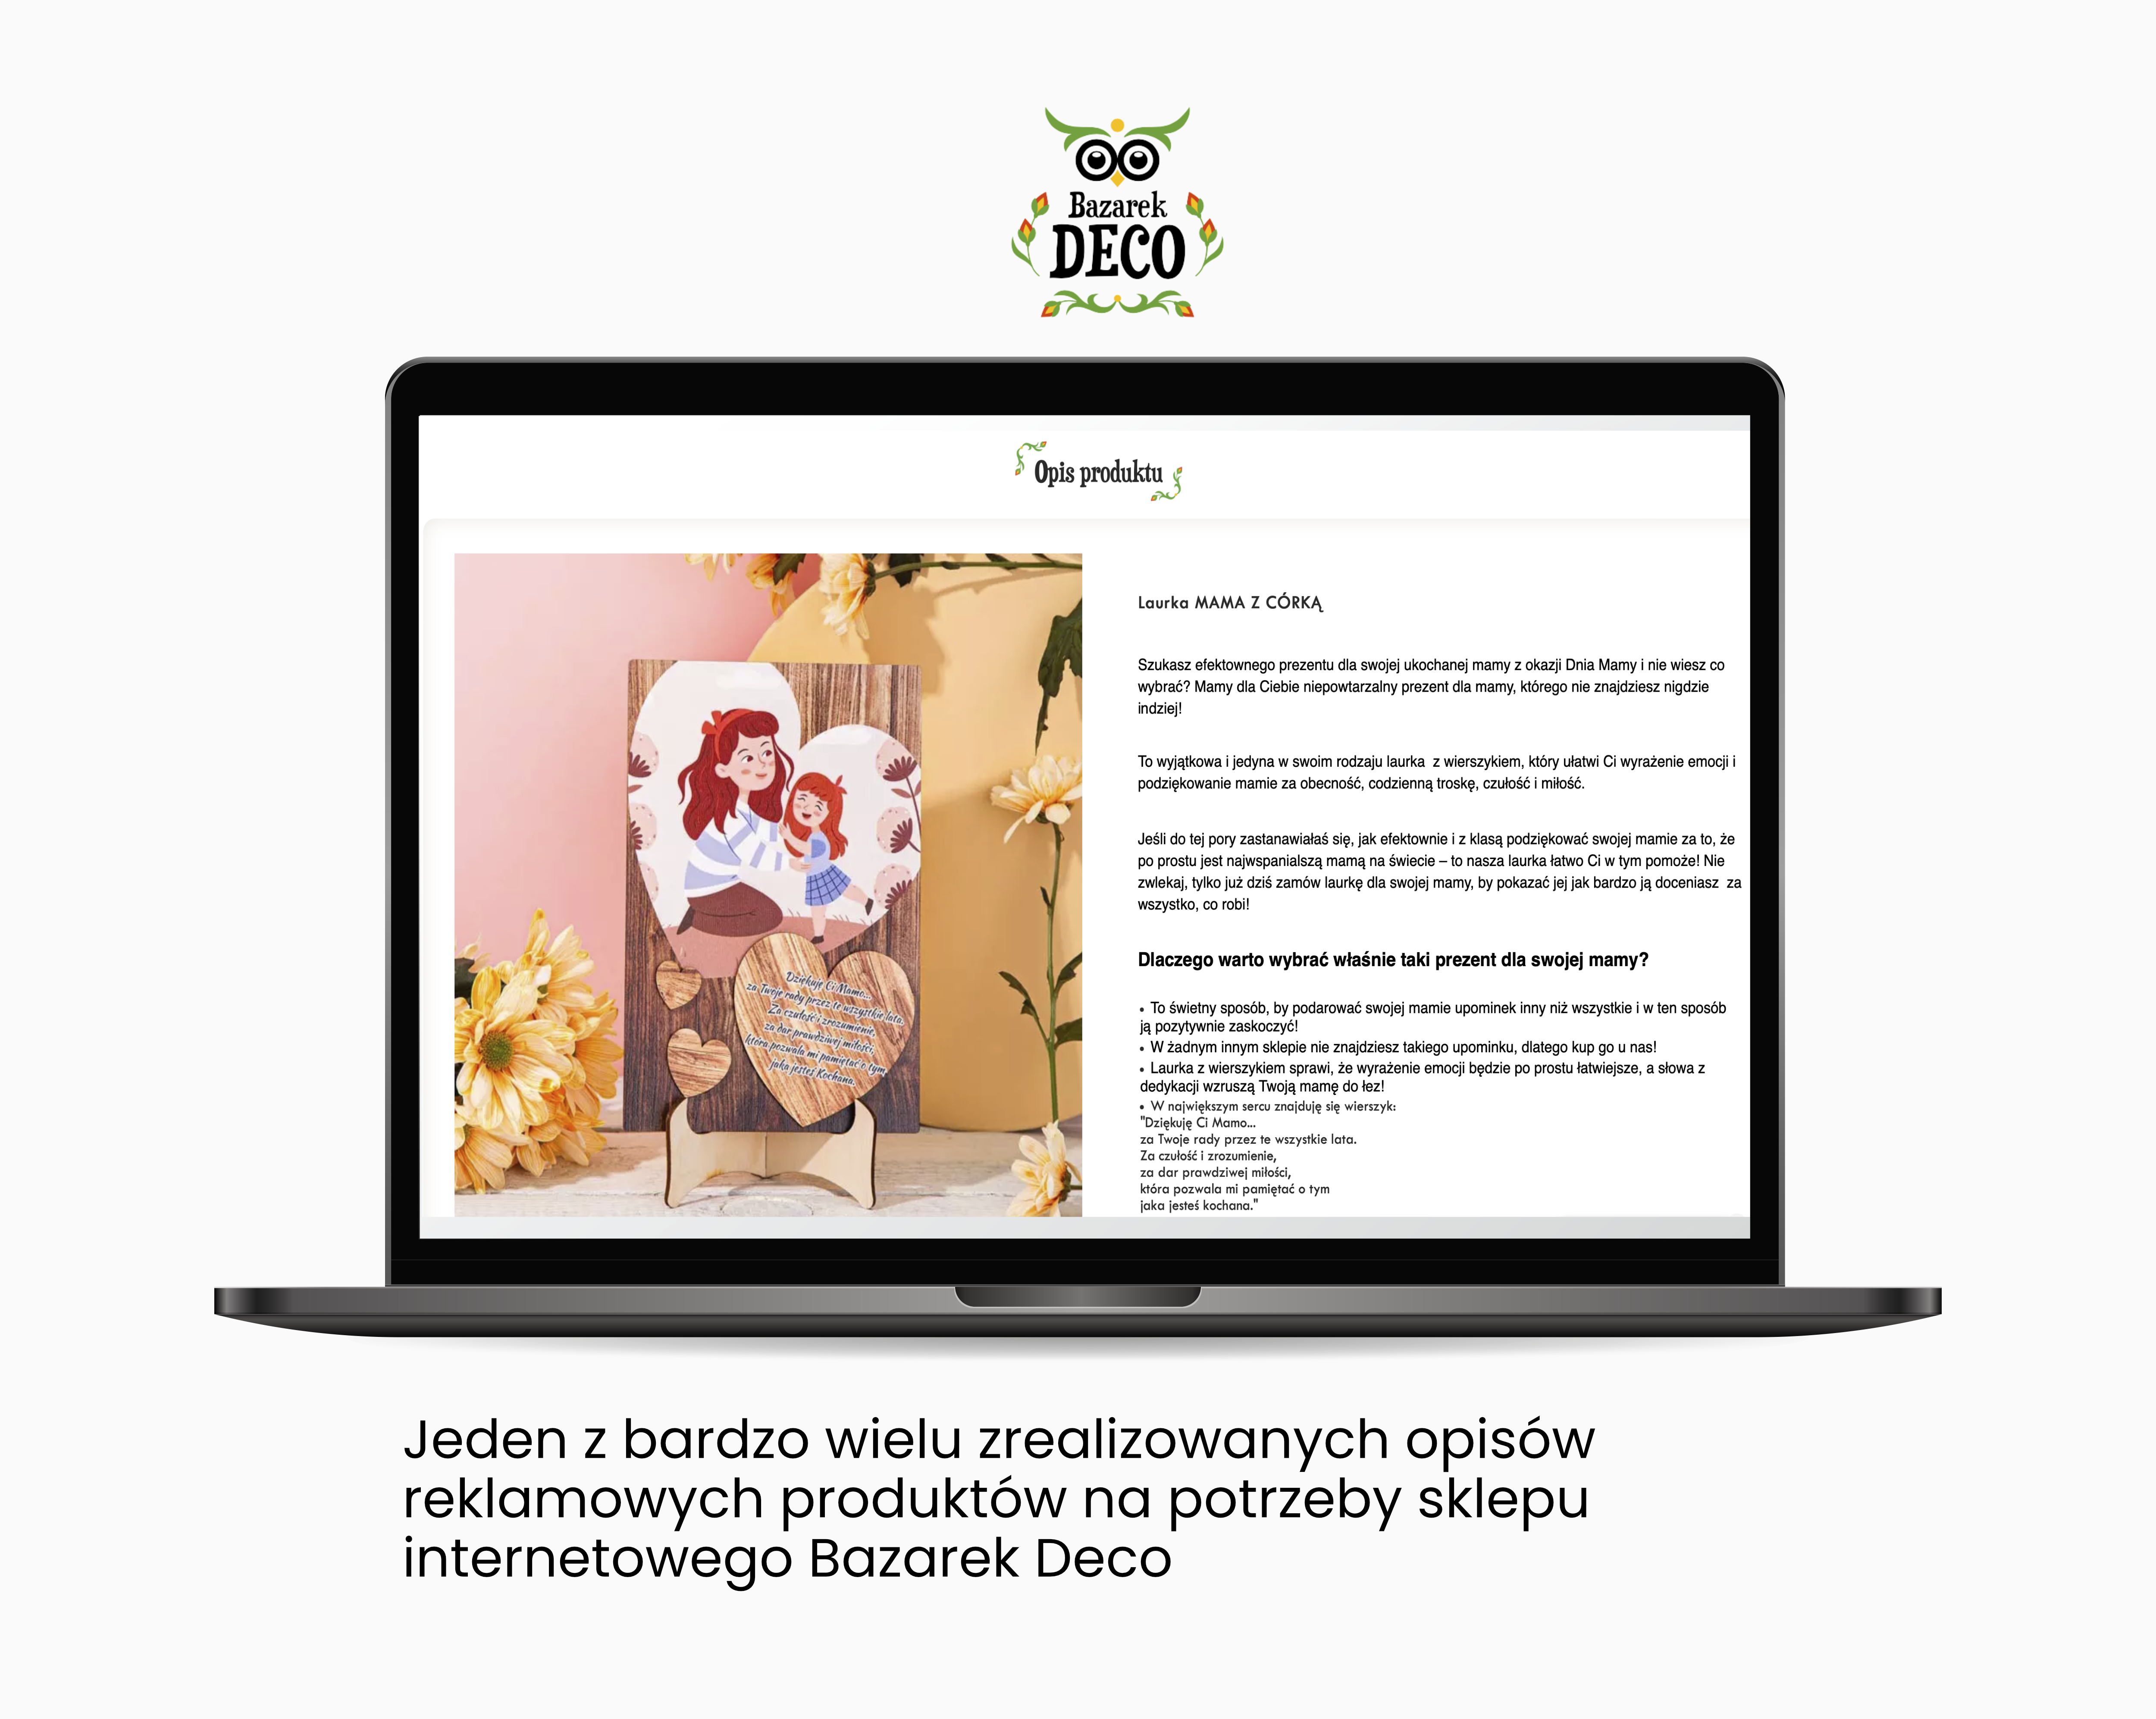 Opis produktu dla Bazarek Deco  - Portfolio copywriterskie Verbal Fairy